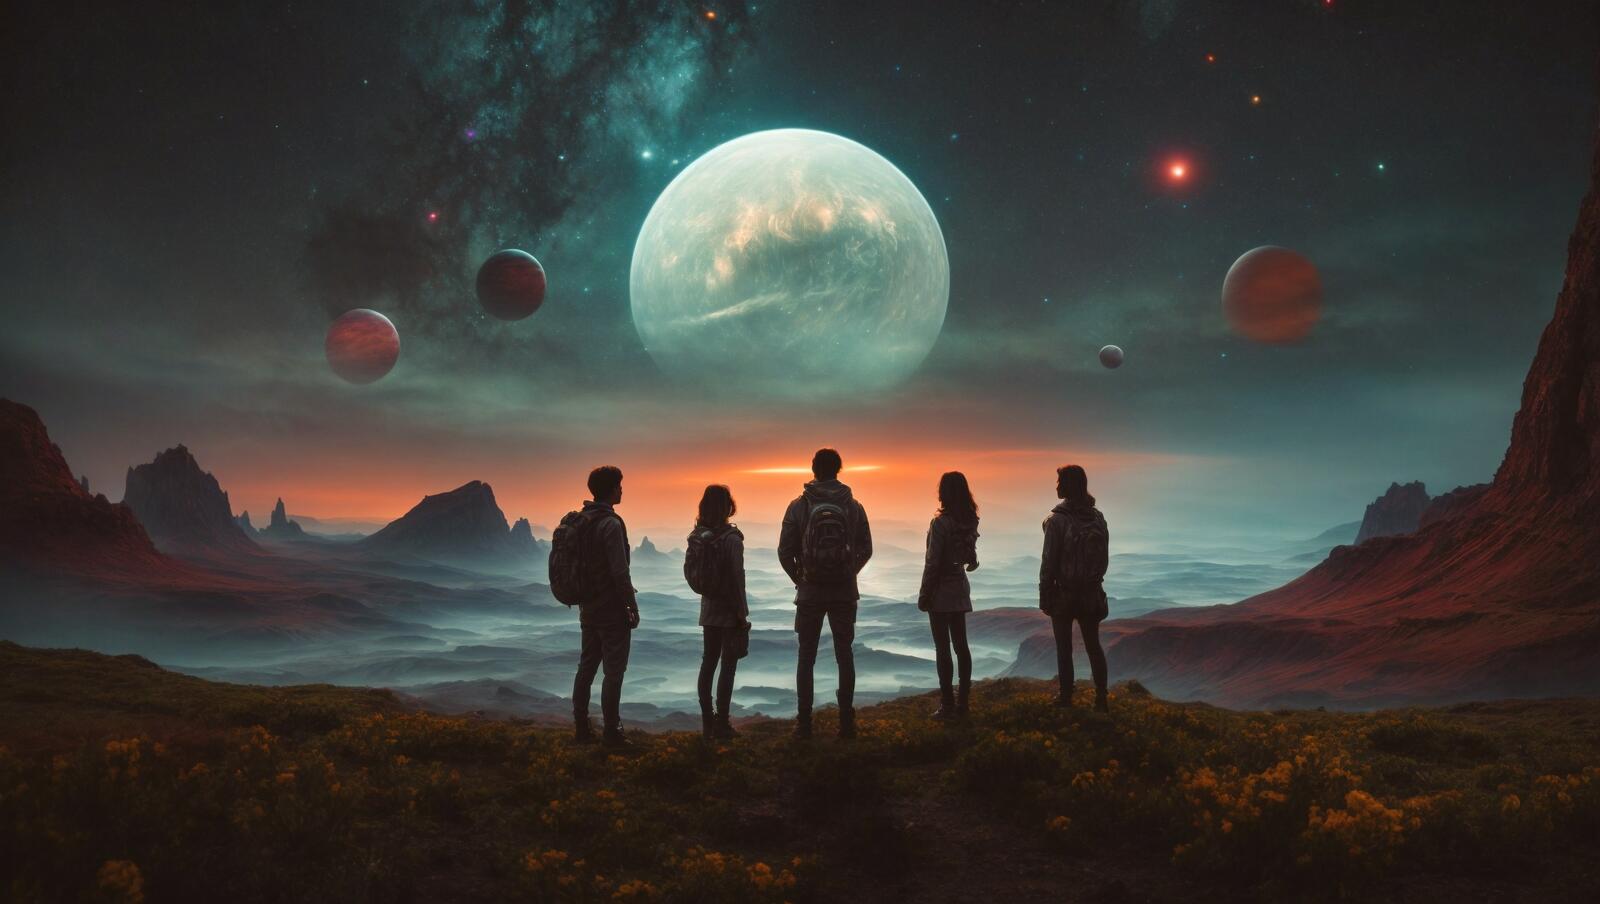 Бесплатное фото Пять инопланетян, похожих на людей, стоят на фоне земли и гор вдали.